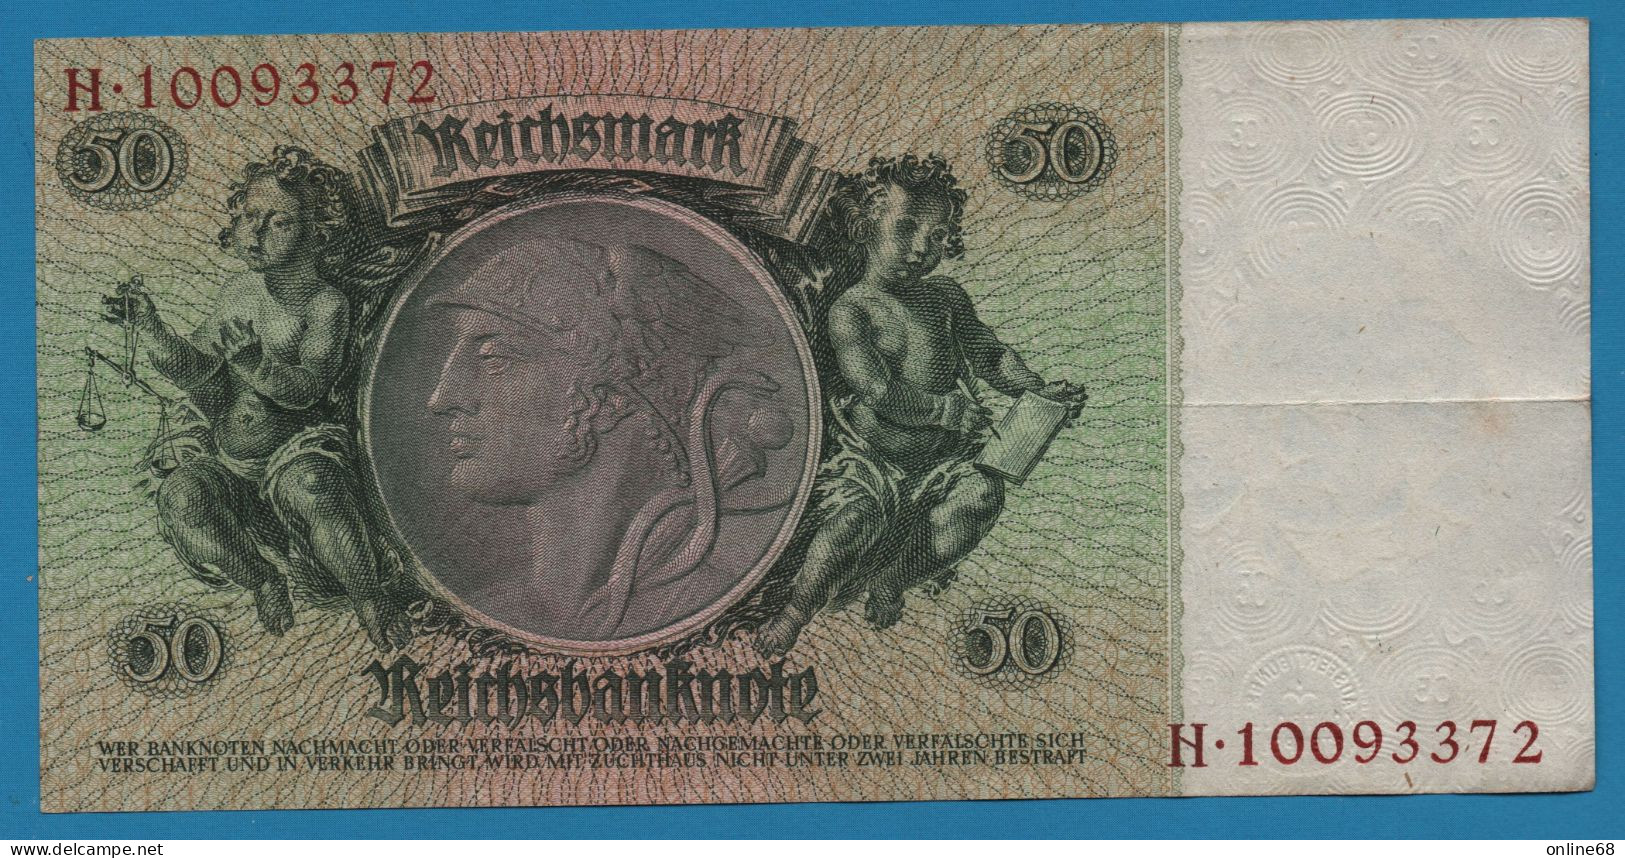 DEUTSCHES REICH 50 REICHSMARK 30.03.1933 LETTER A # H.10093372 P# 182a  David Hansemann - 50 Reichsmark